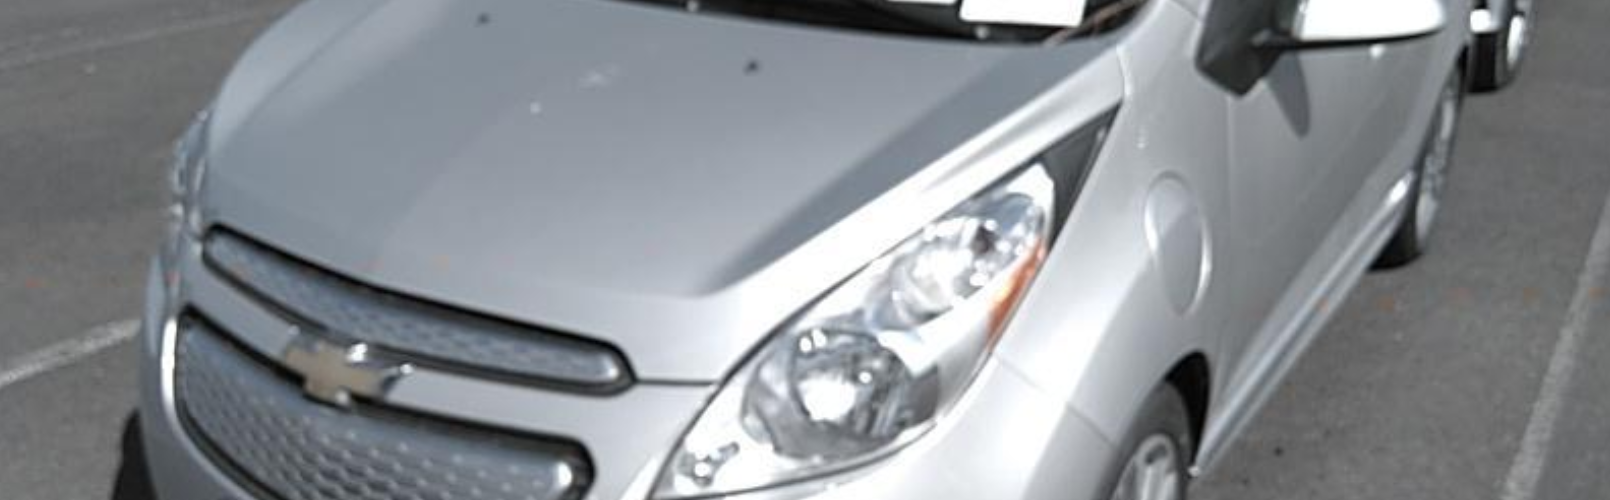 CHEVY SPARK EV 2LT 2015 – 30 787  Km – Charge rapide 400V – Seulement 15 171 $ avec la subvention – VENDU